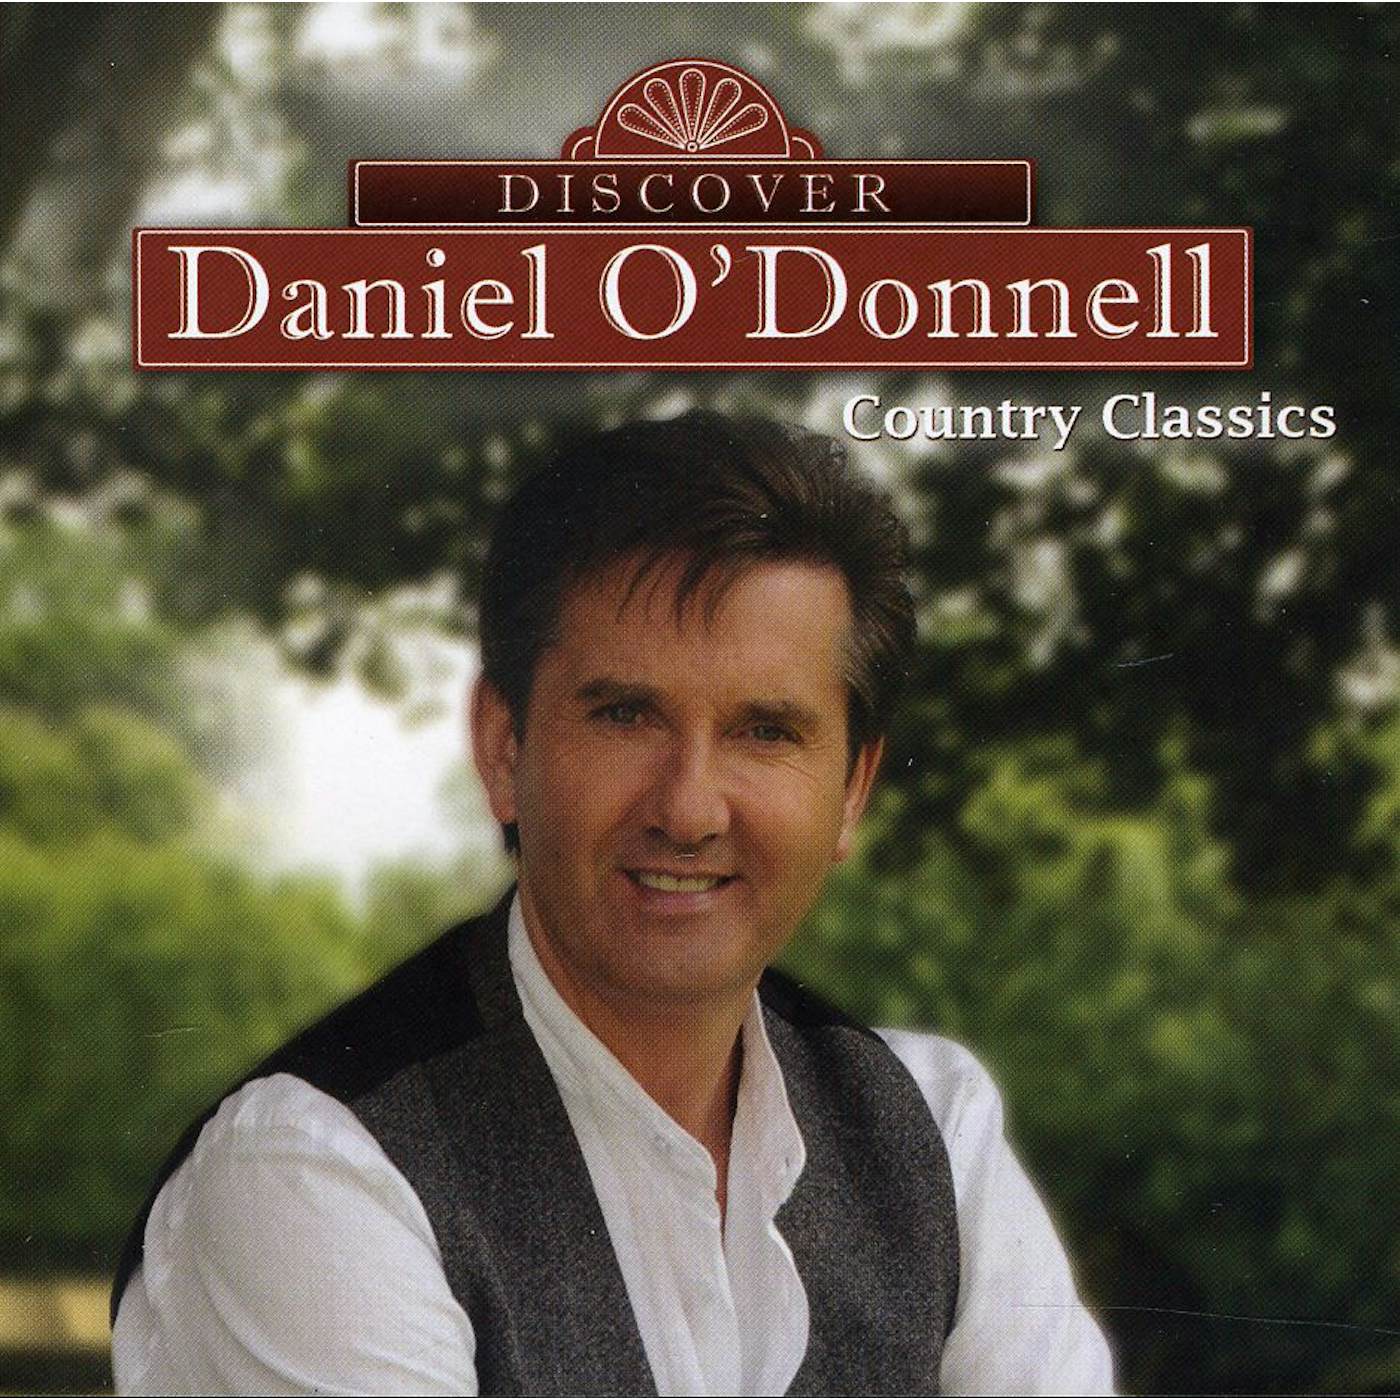 Daniel O'Donnell DISCOVER DANIEL CD